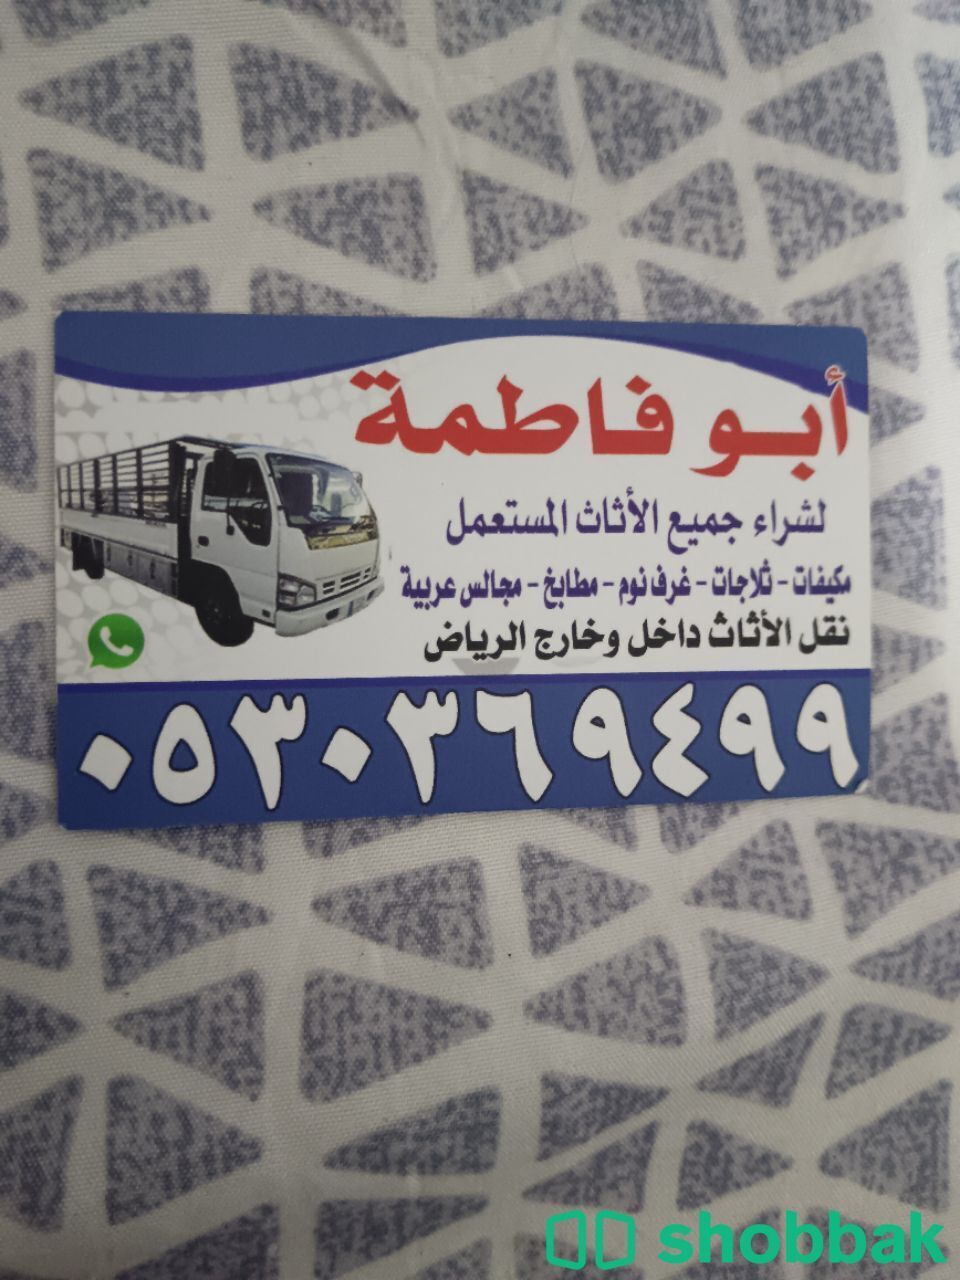 شراء مكيفات مستعمله حي الشفاء 0530369499 Shobbak Saudi Arabia